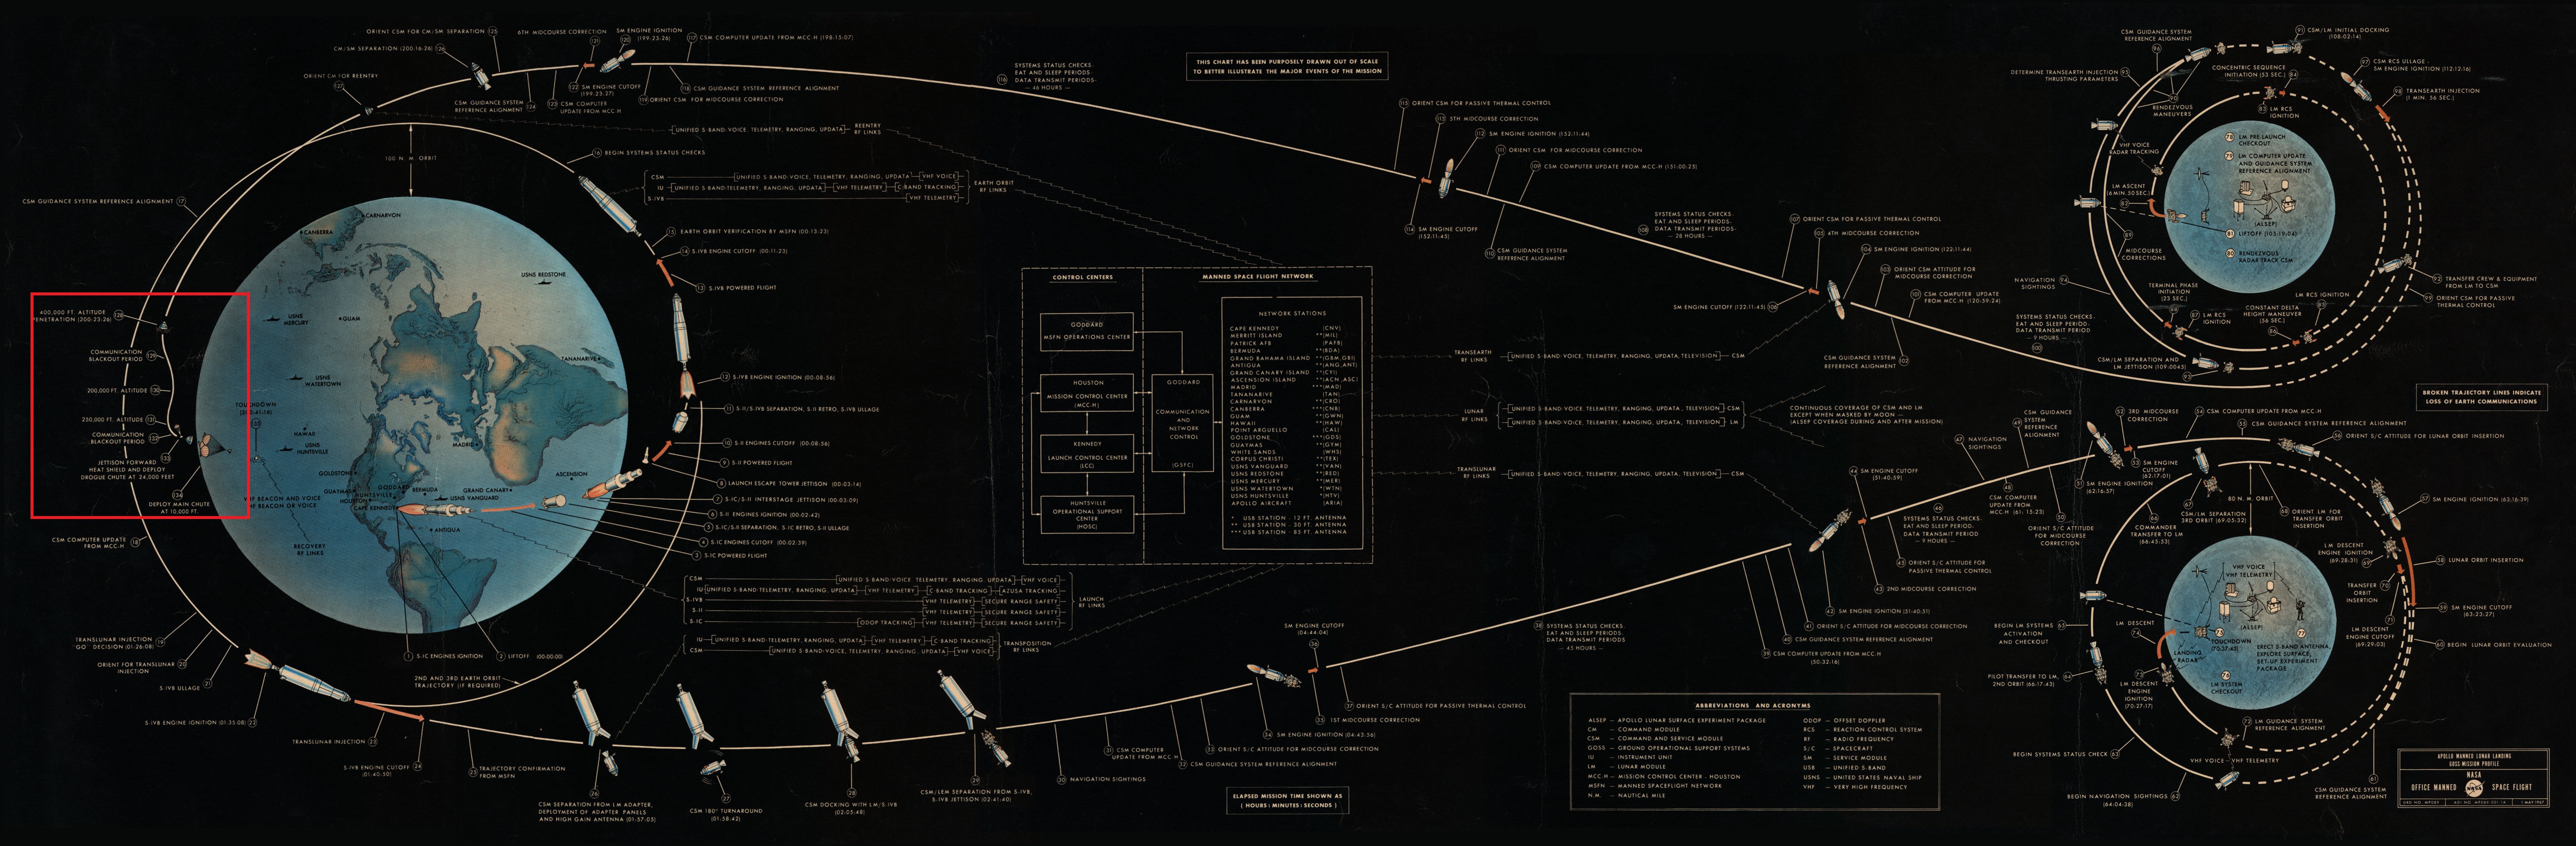 Diagram explicatif du déroulé d'une mission Apollo - phase de rentrée atmosphérique et d'amerrissage mise en avant